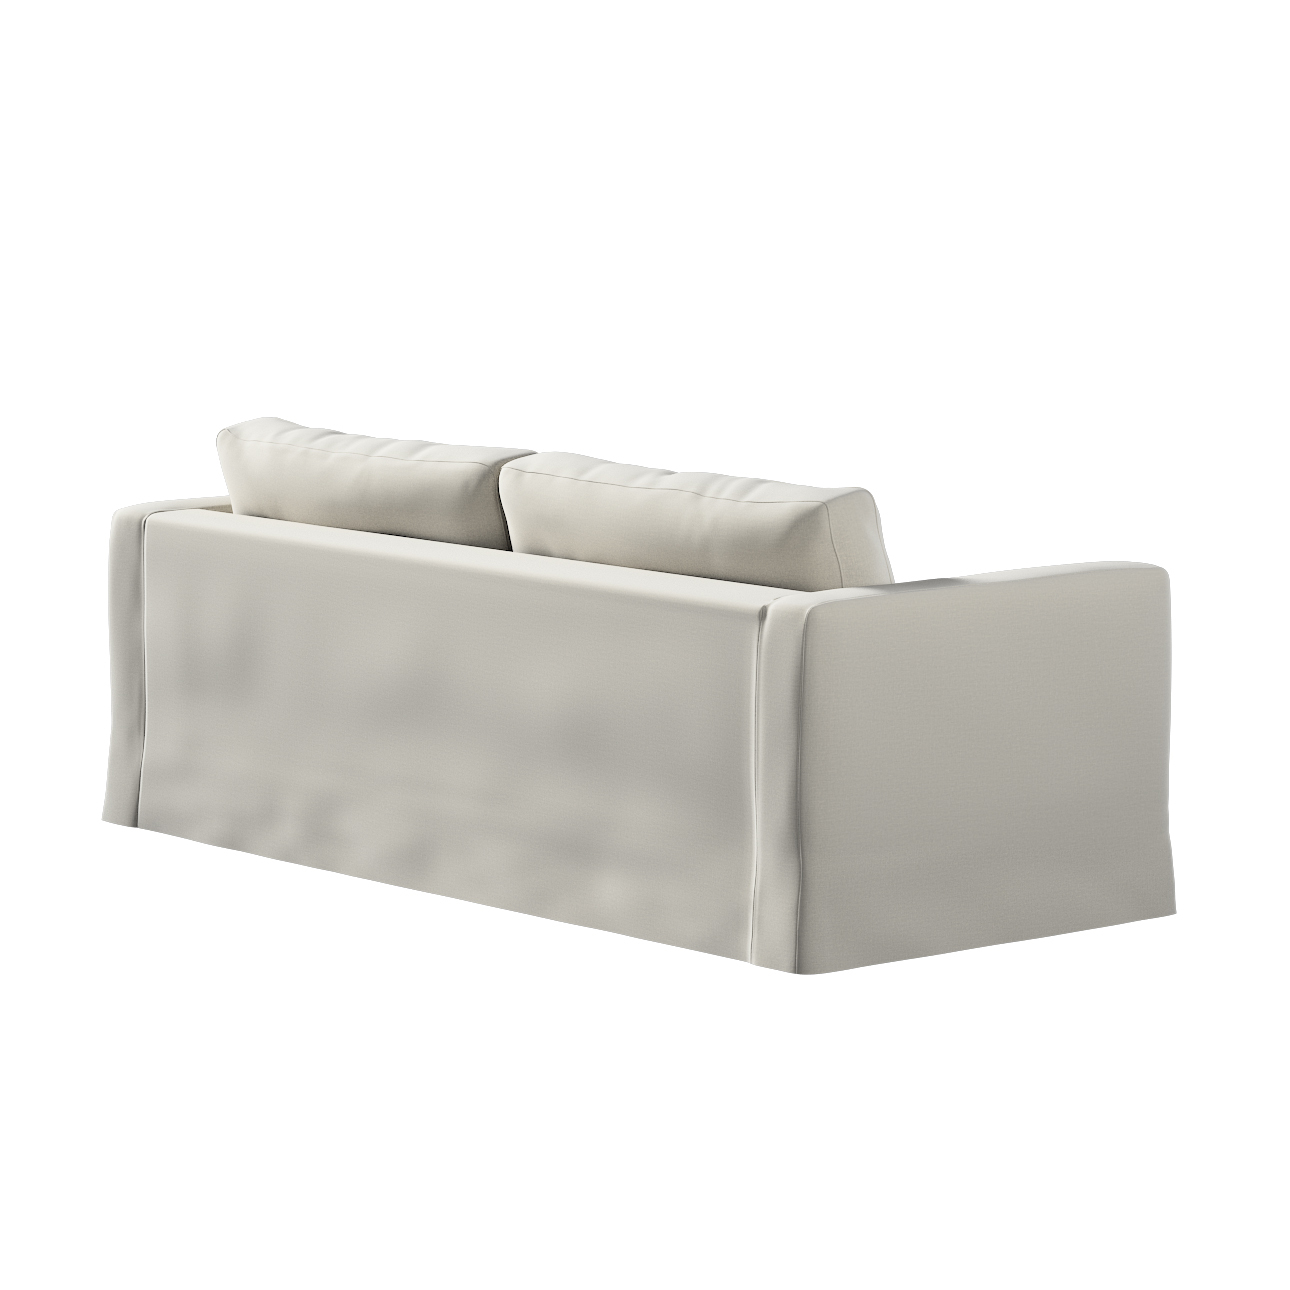 Bezug für Karlstad 3-Sitzer Sofa nicht ausklappbar, lang, grau, Bezug für S günstig online kaufen